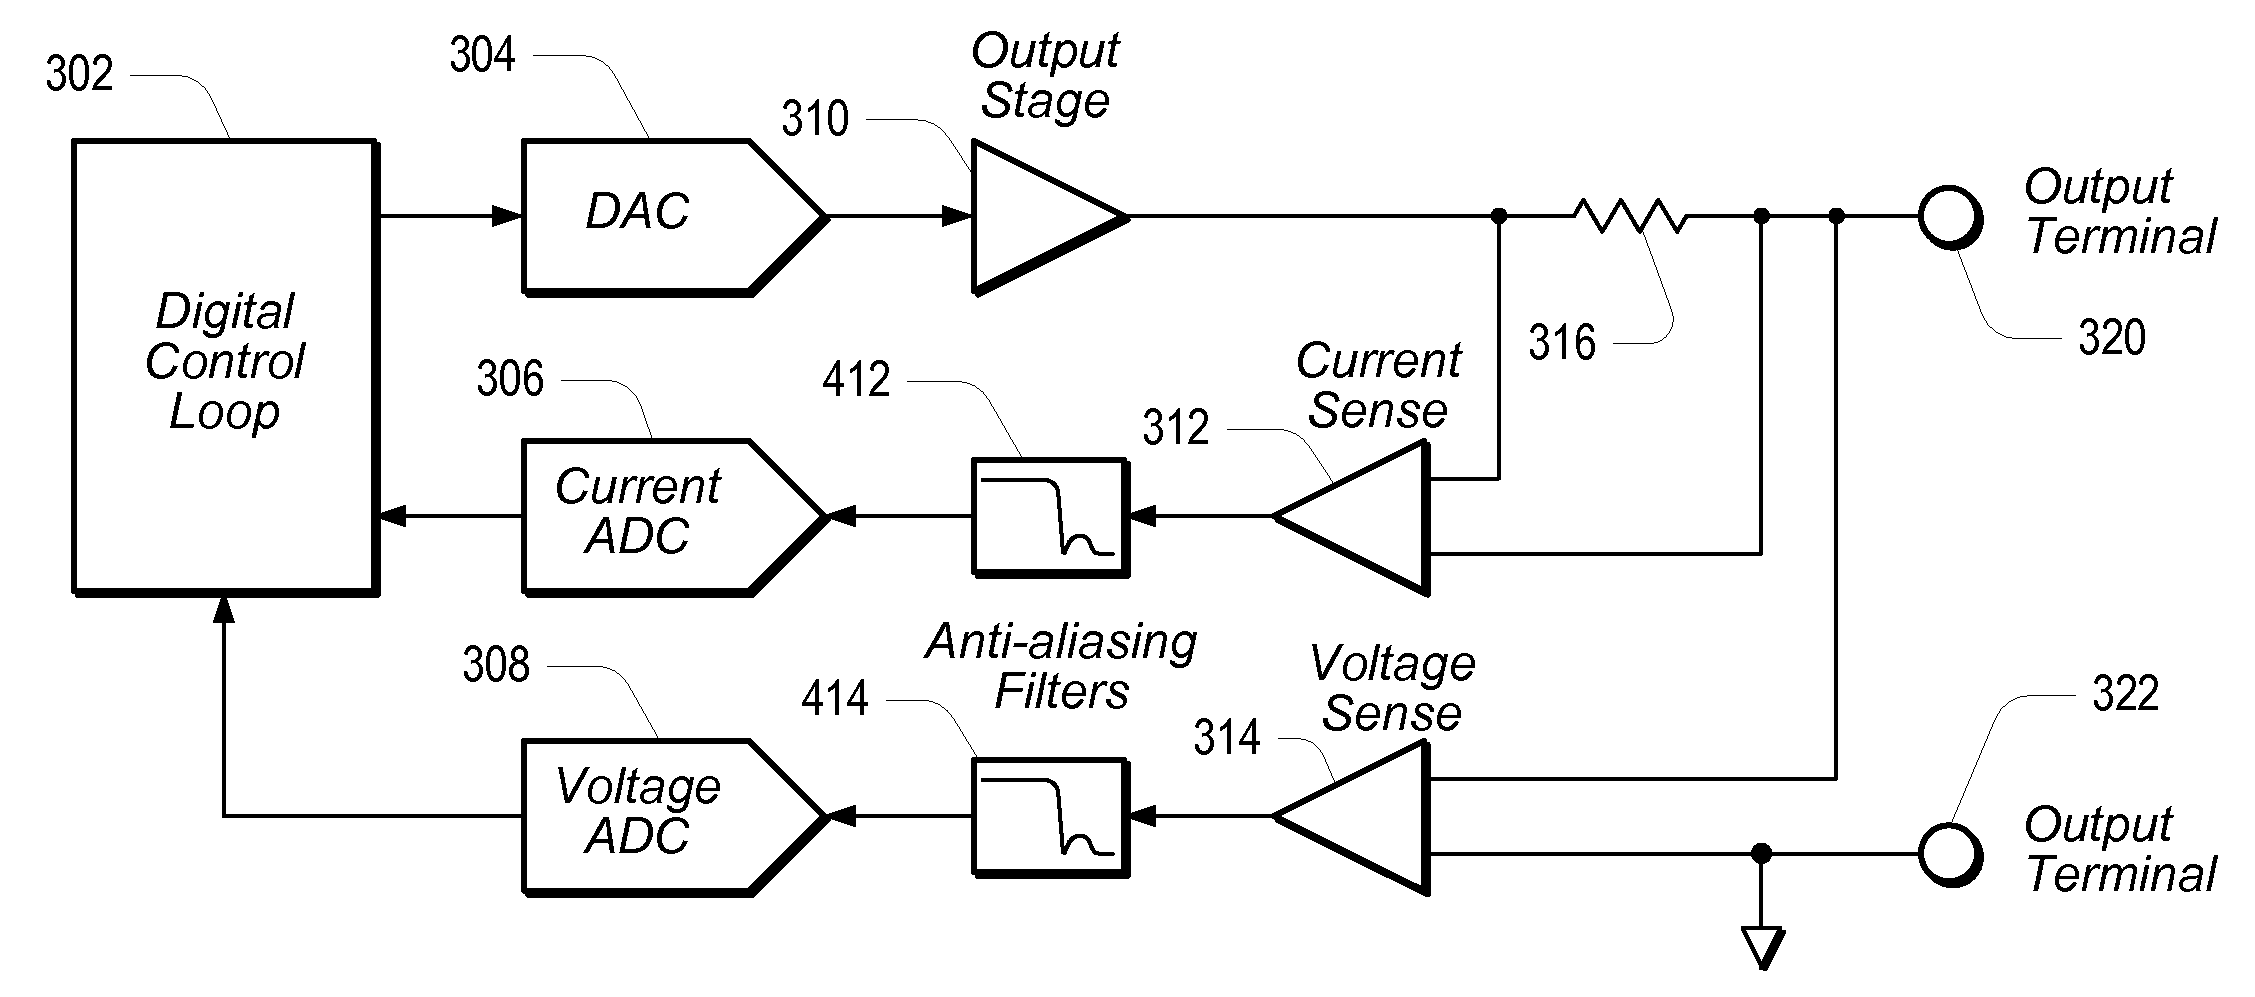 Source-Measure Unit Based on Digital Control Loop